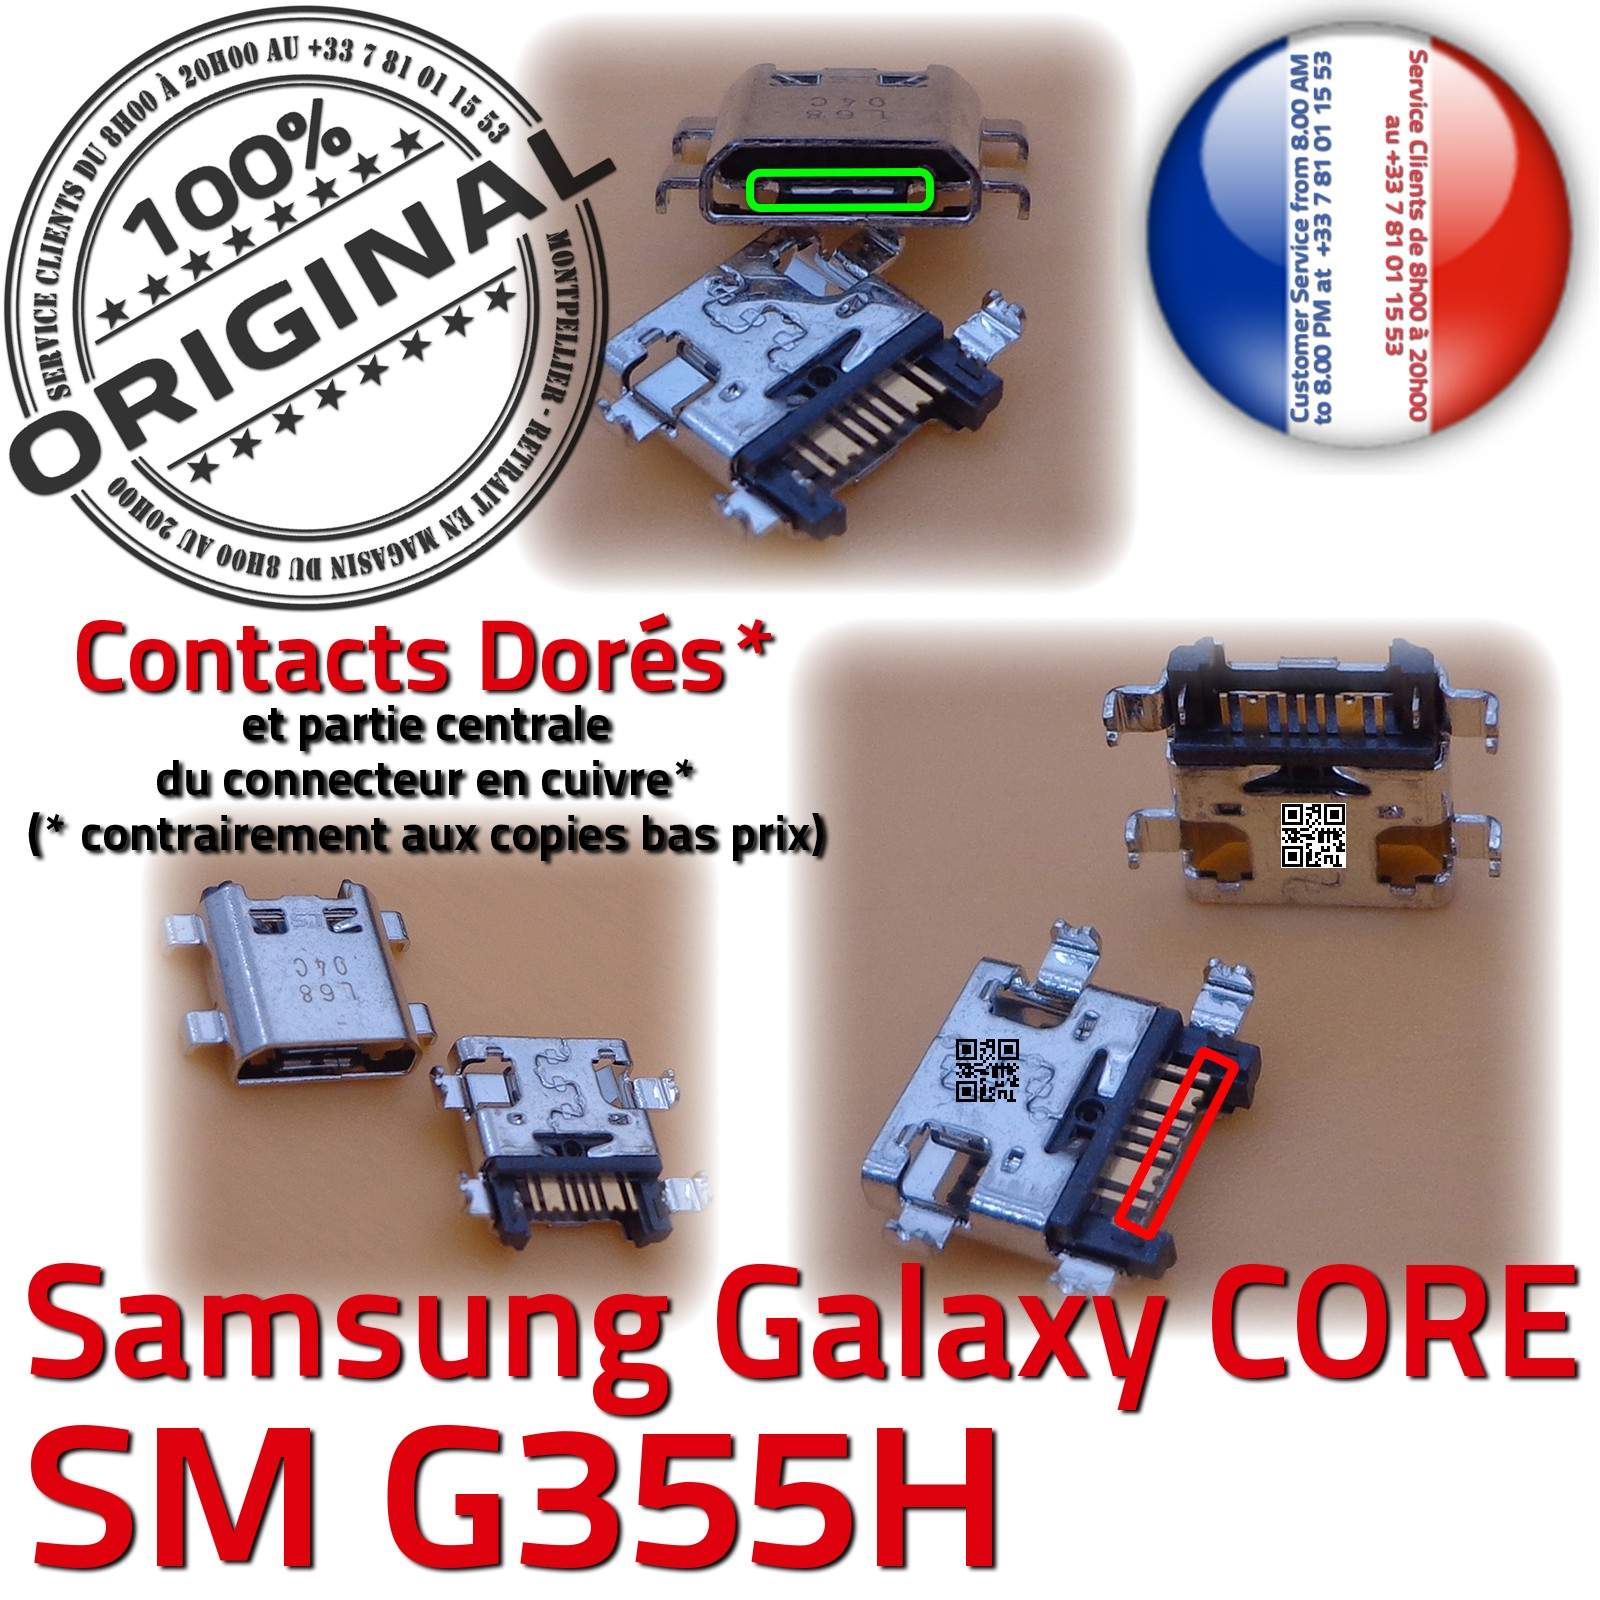 Samsung Galaxy Core 2 SM-G355H Prise de charge PORT Micro USB Qualité ORIGINAL à souder Pins Dorés Dock Fiche Connector Chargeur